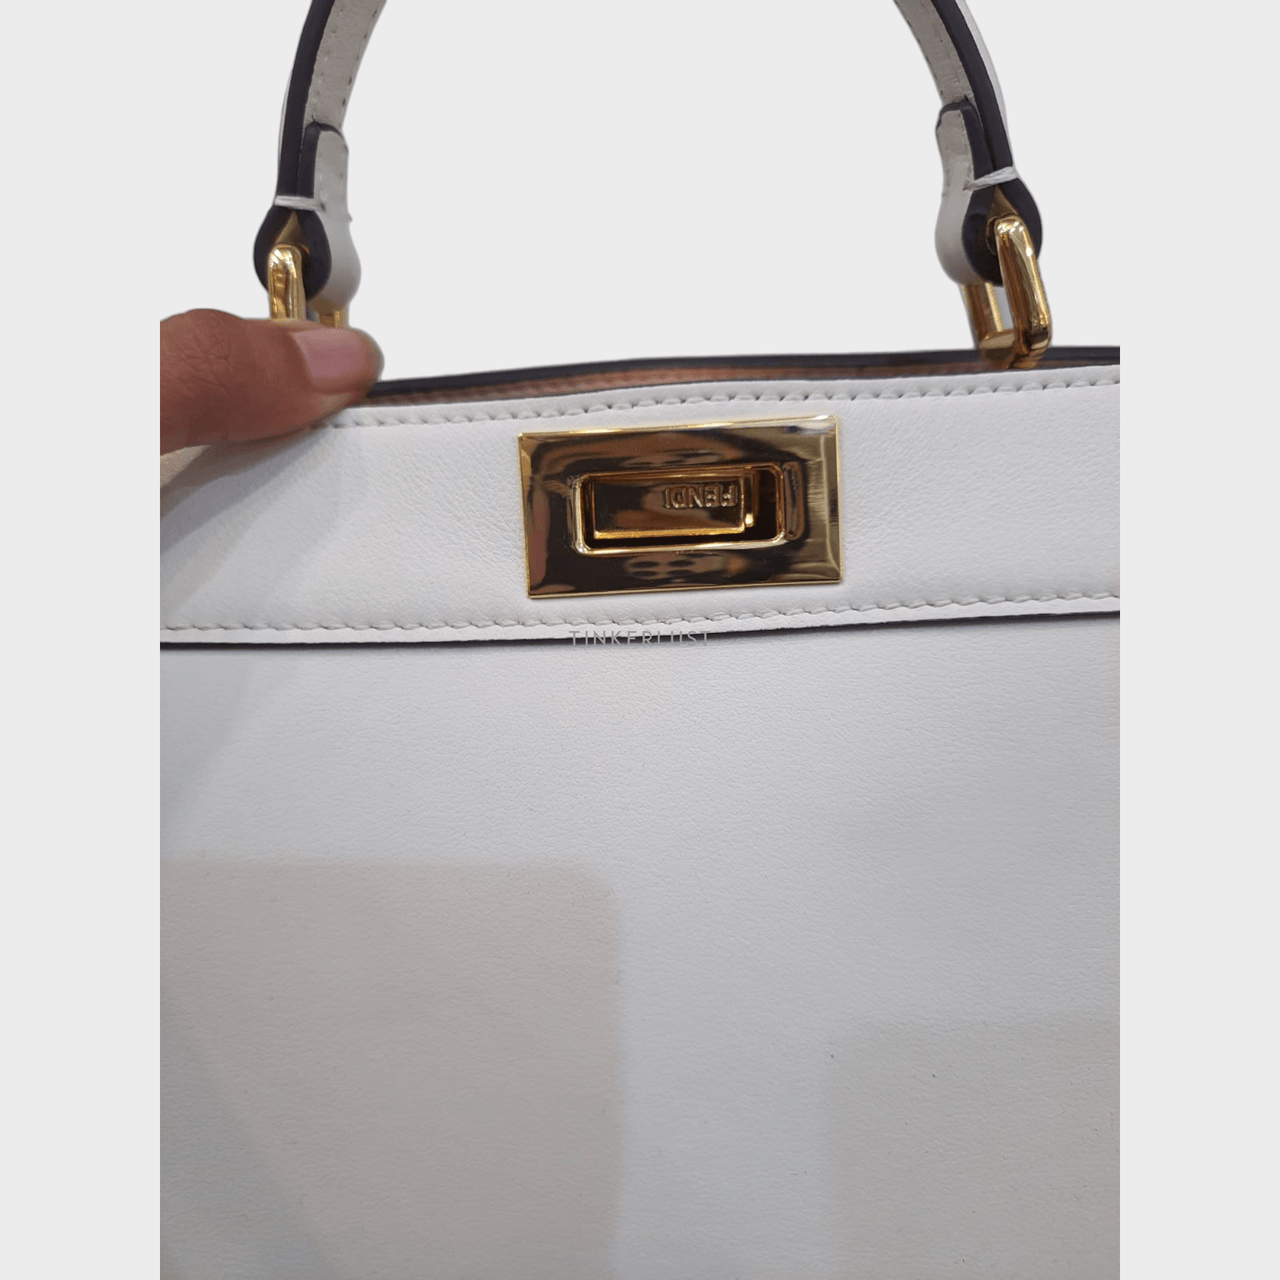 Fendi Peekaboo ISeeU Small White Leather Bag